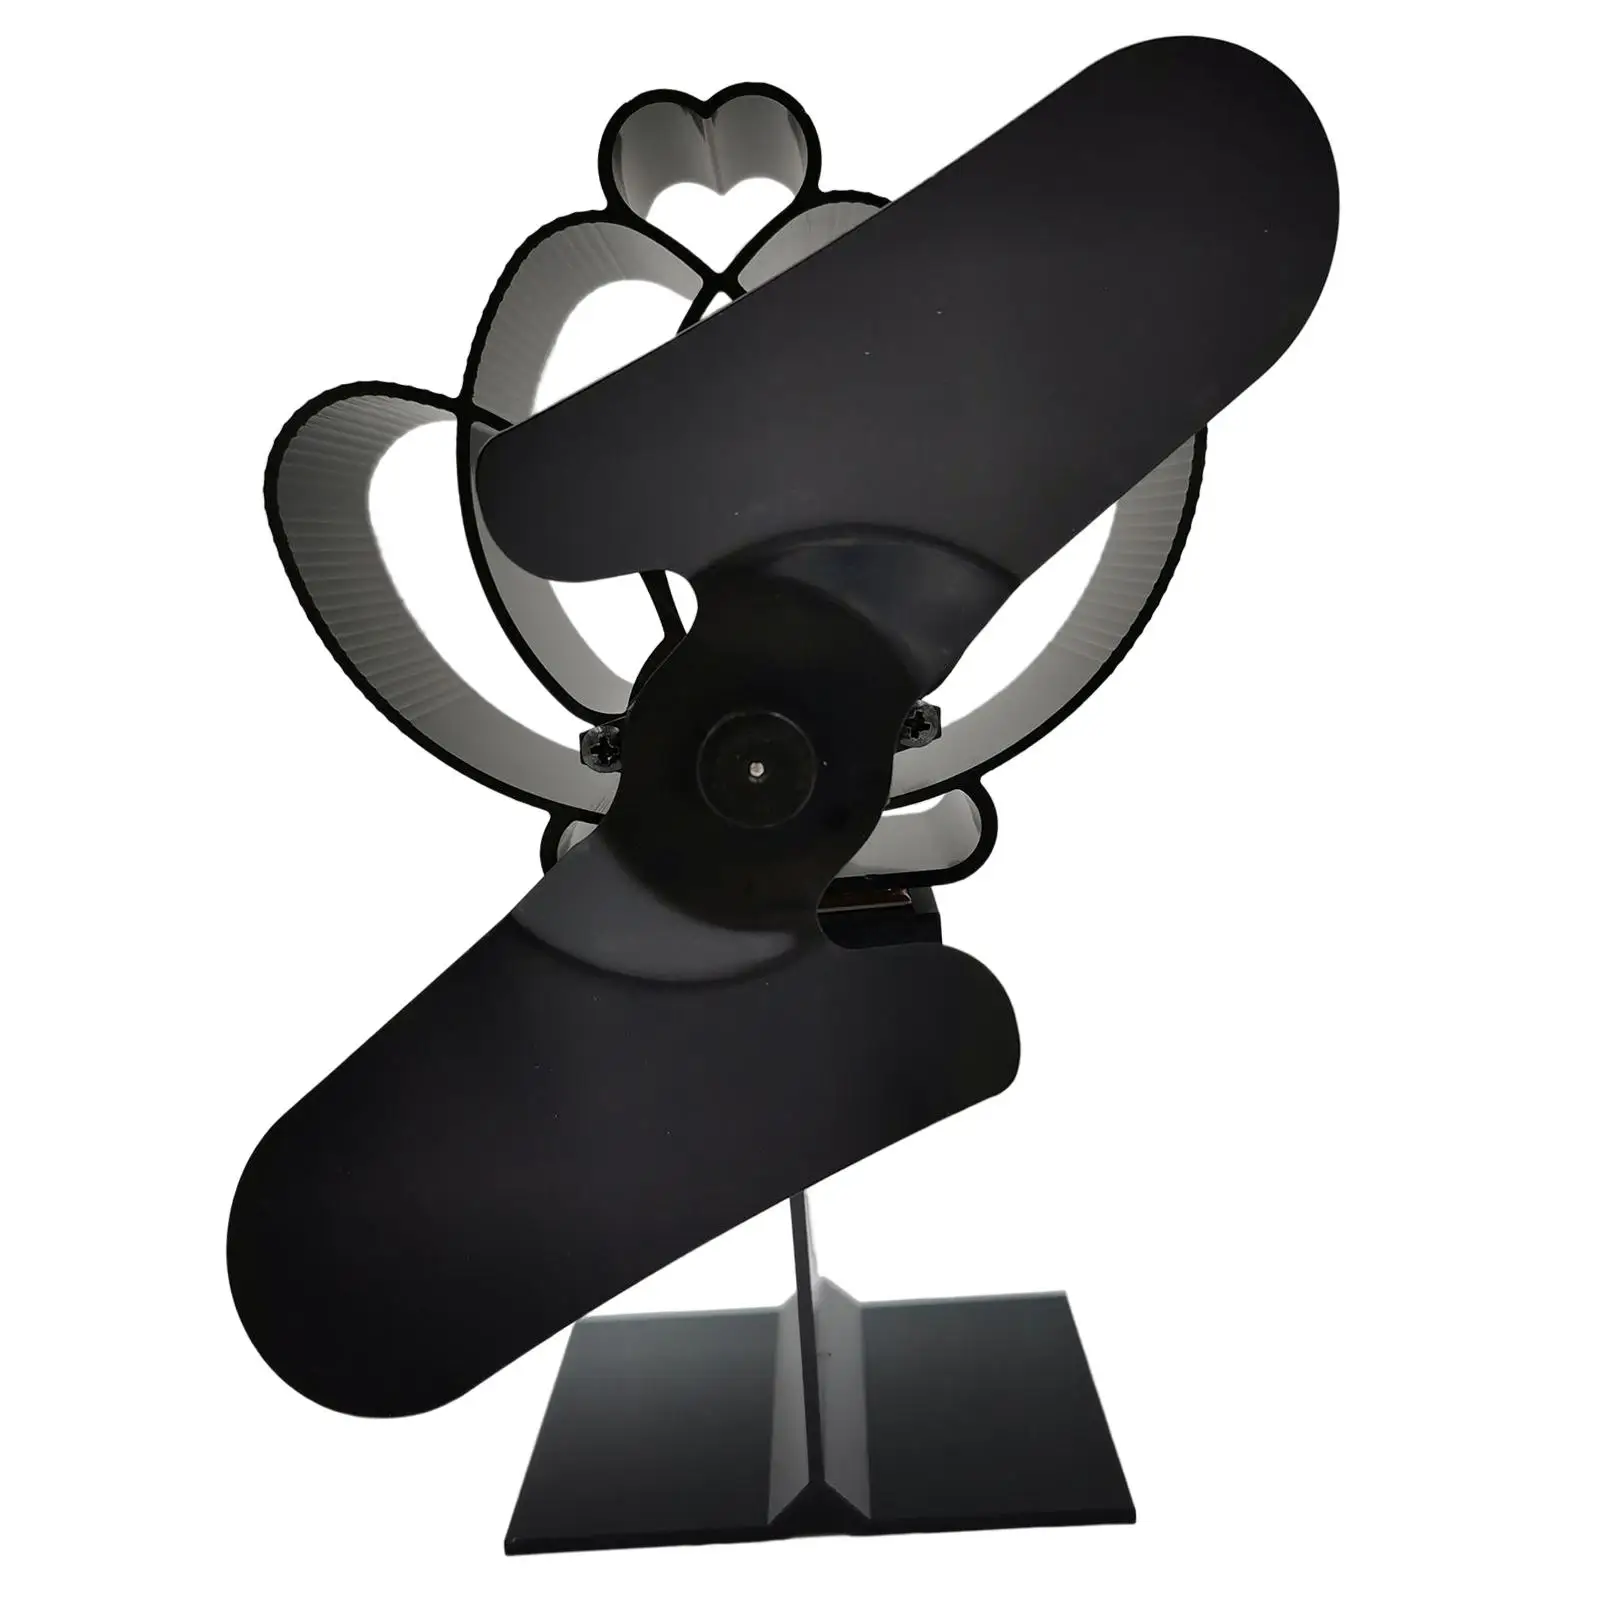 Fireplace Fan Efficient Heat Transfer Save Fuel Heat Powered Top Fan